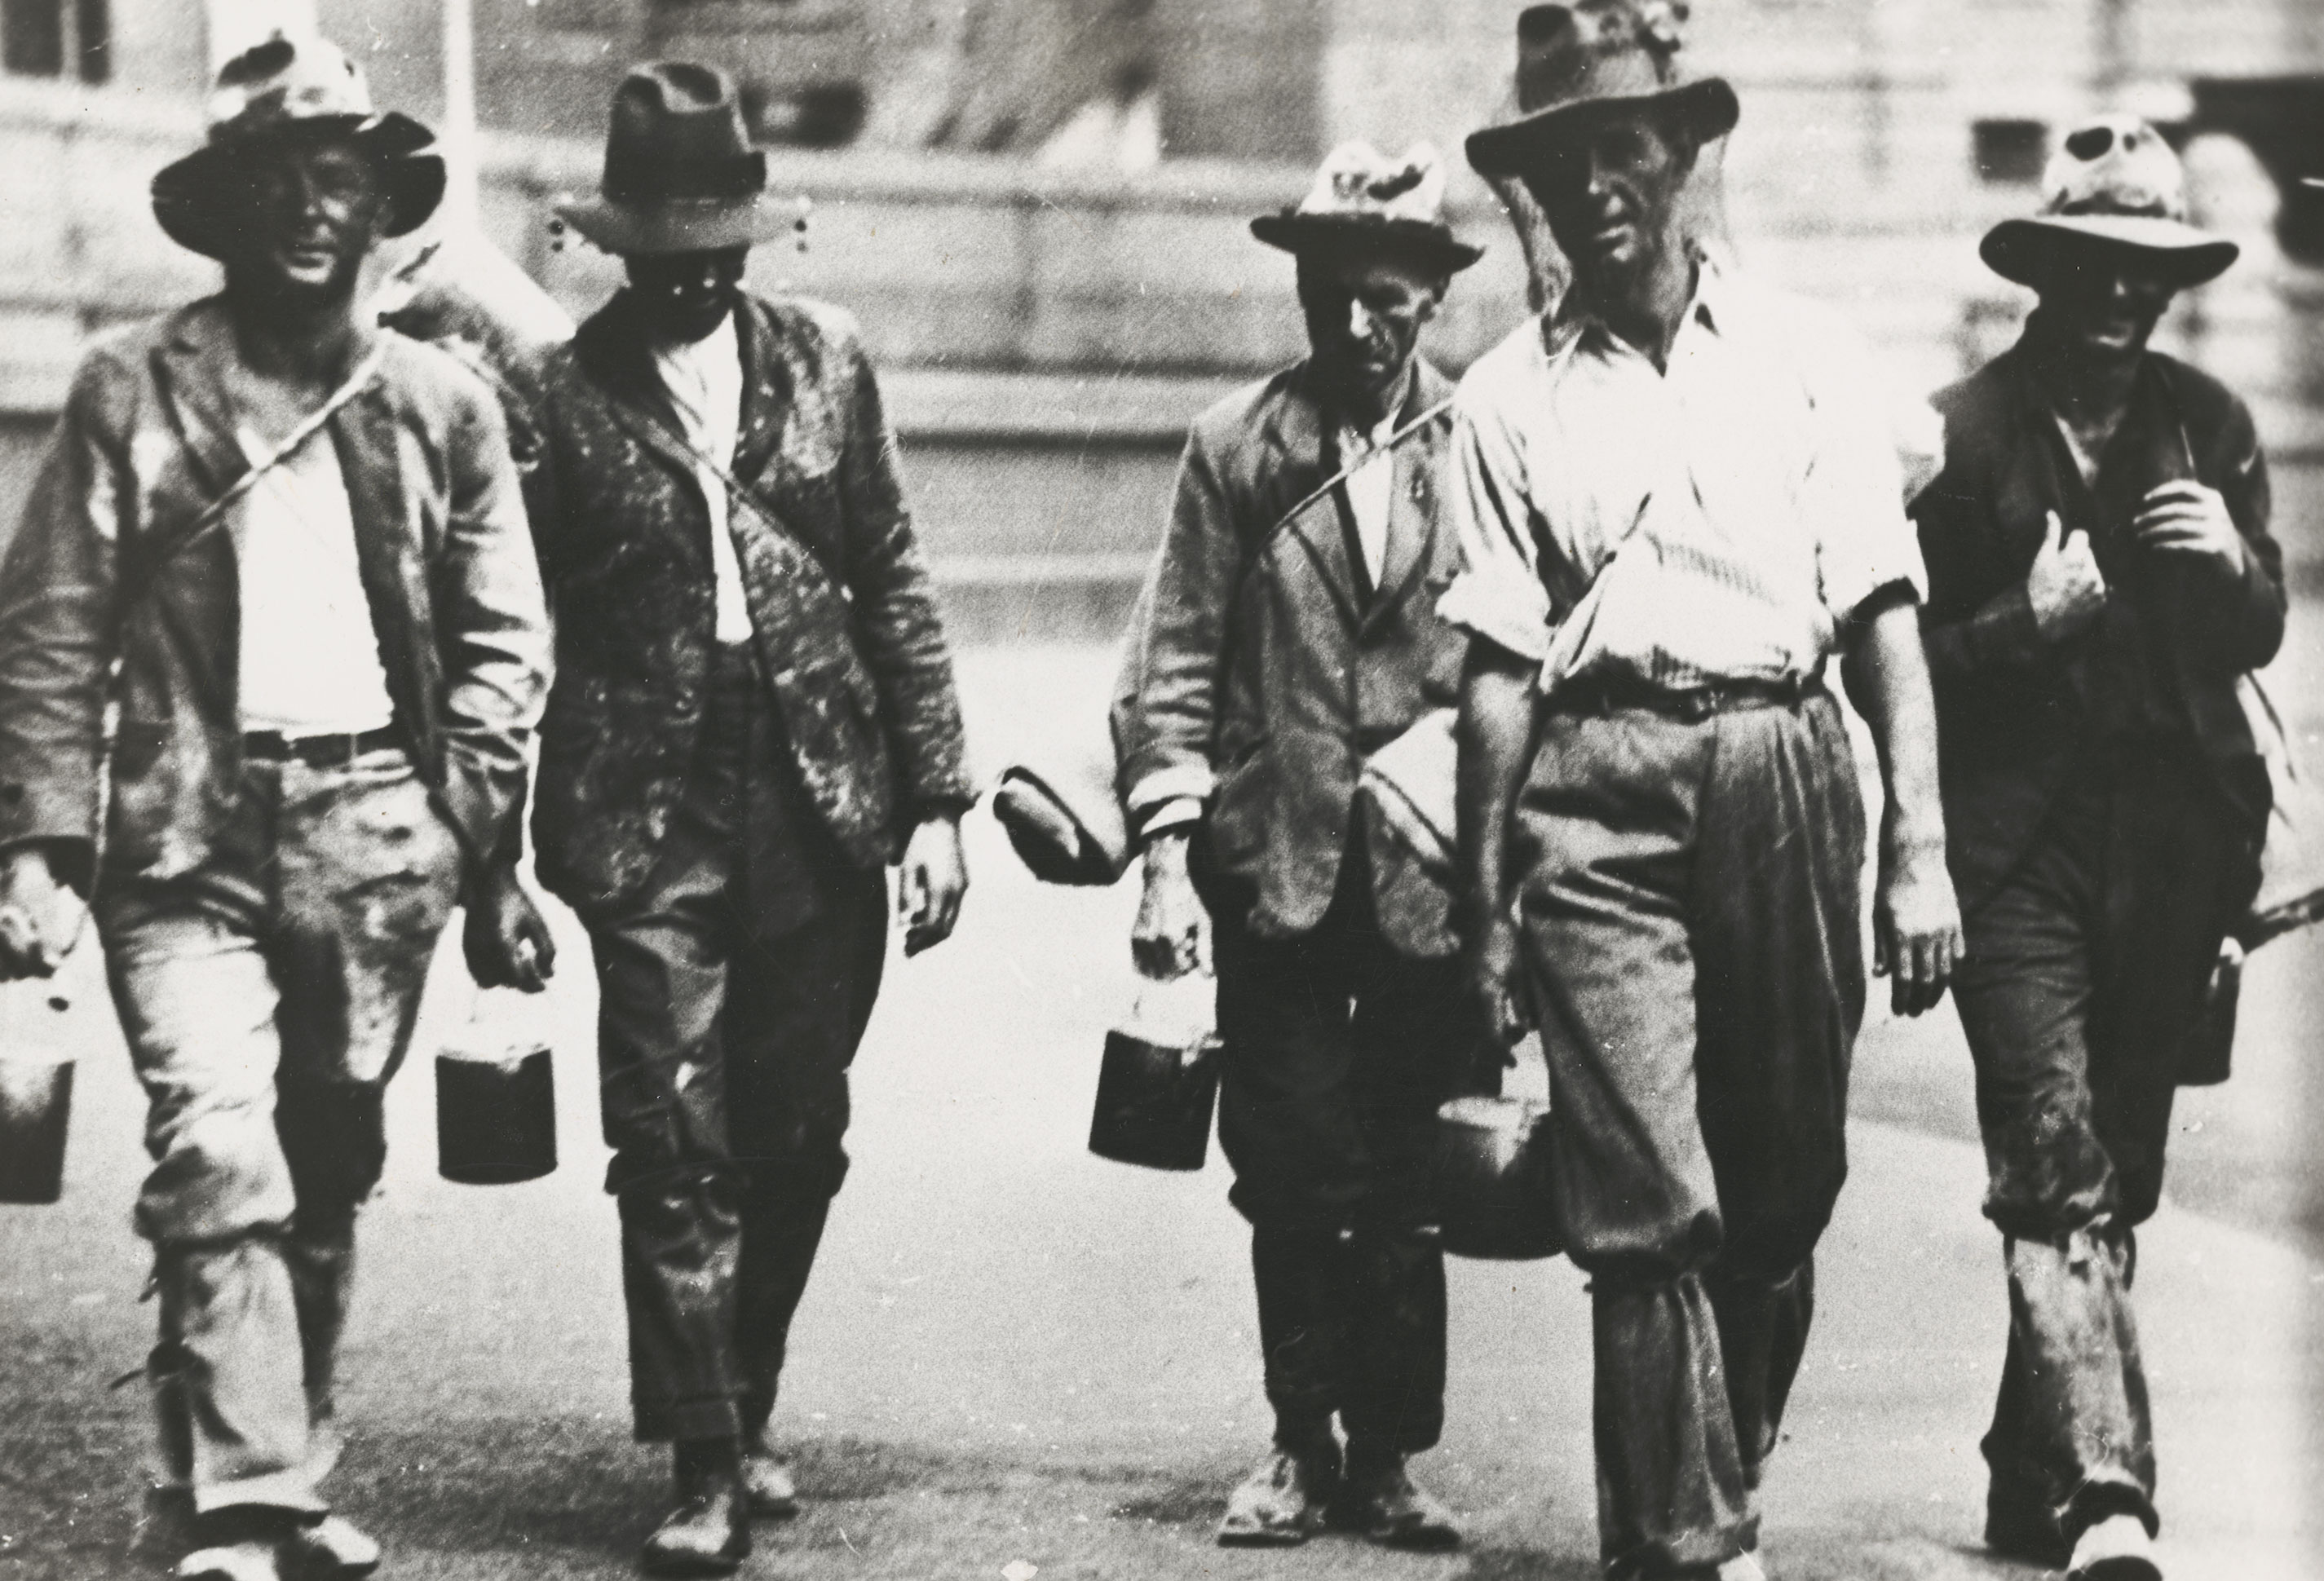 Men looking for work, 1930.